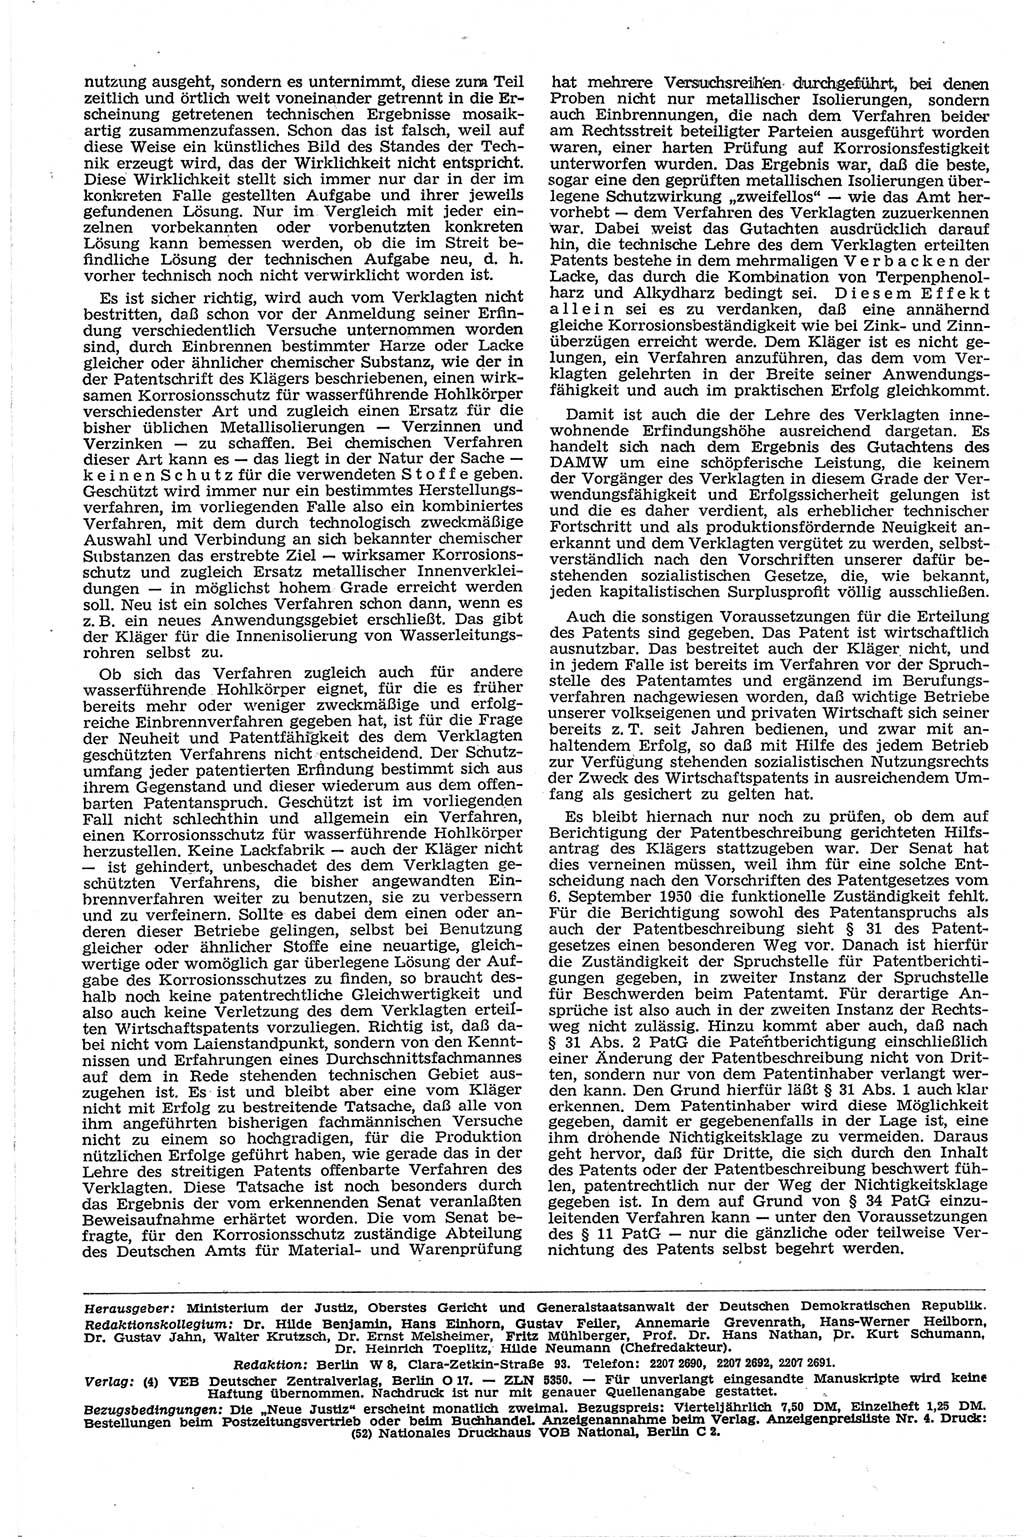 Neue Justiz (NJ), Zeitschrift für Recht und Rechtswissenschaft [Deutsche Demokratische Republik (DDR)], 13. Jahrgang 1959, Seite 324 (NJ DDR 1959, S. 324)